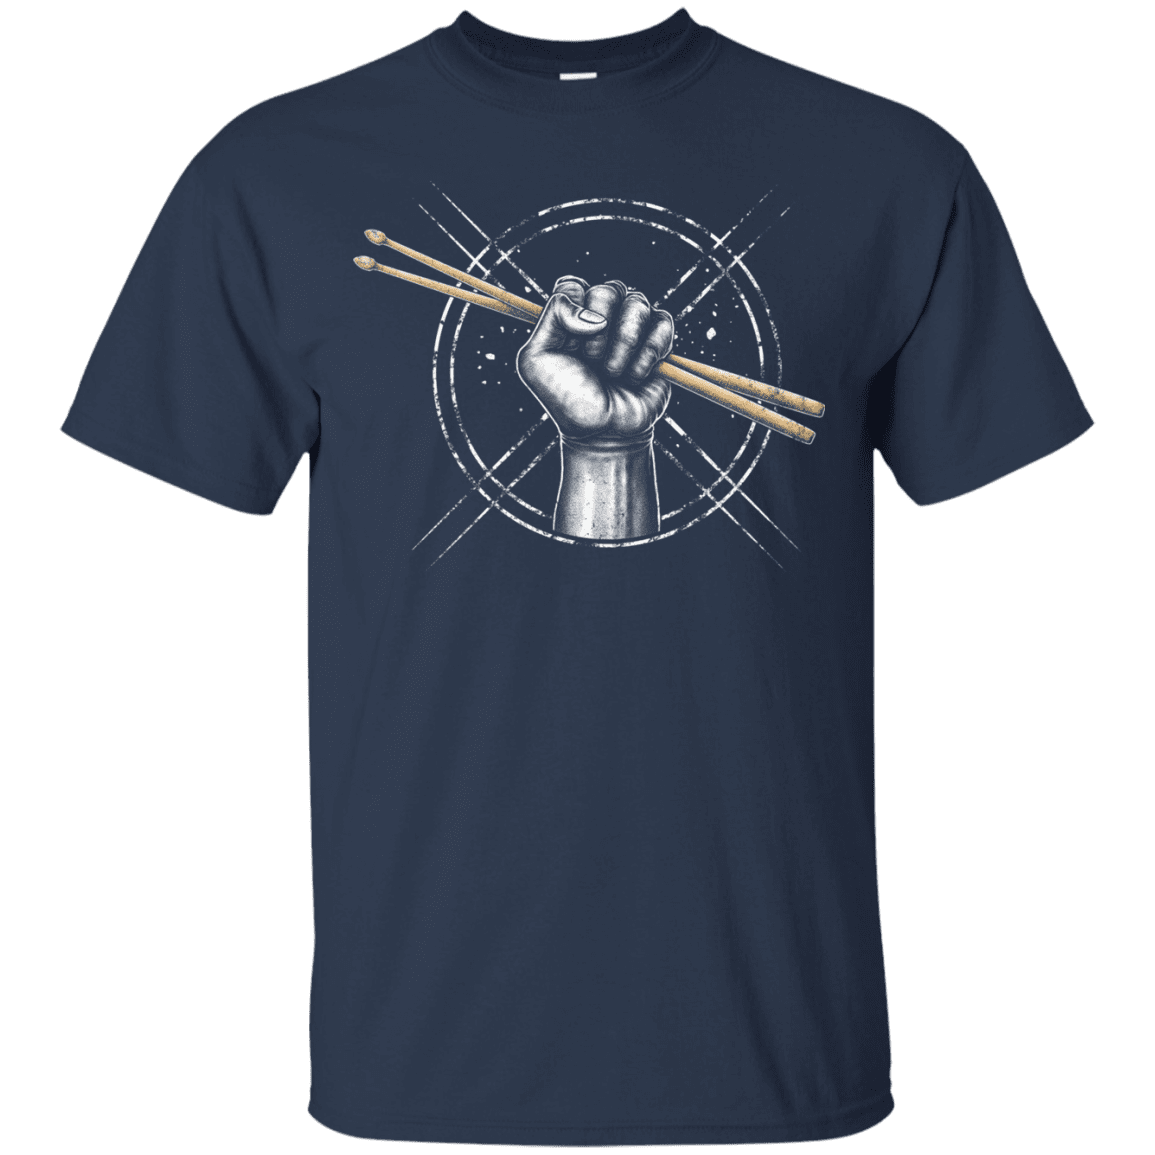 Drum Power Shirt